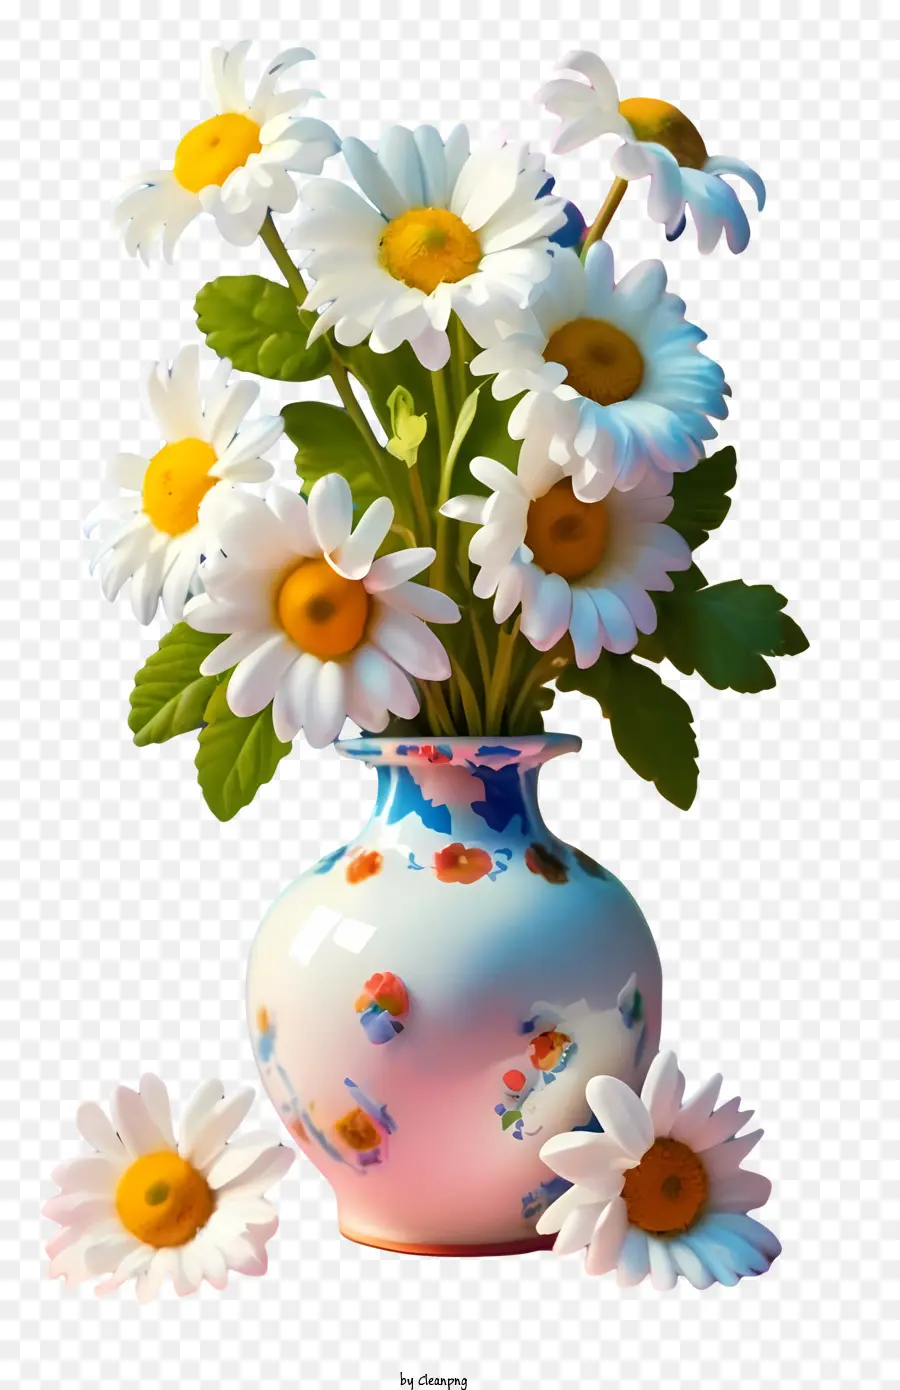 florales Design - Vase der weißen Gänseblümchen, die von weißen Blumen umgeben sind